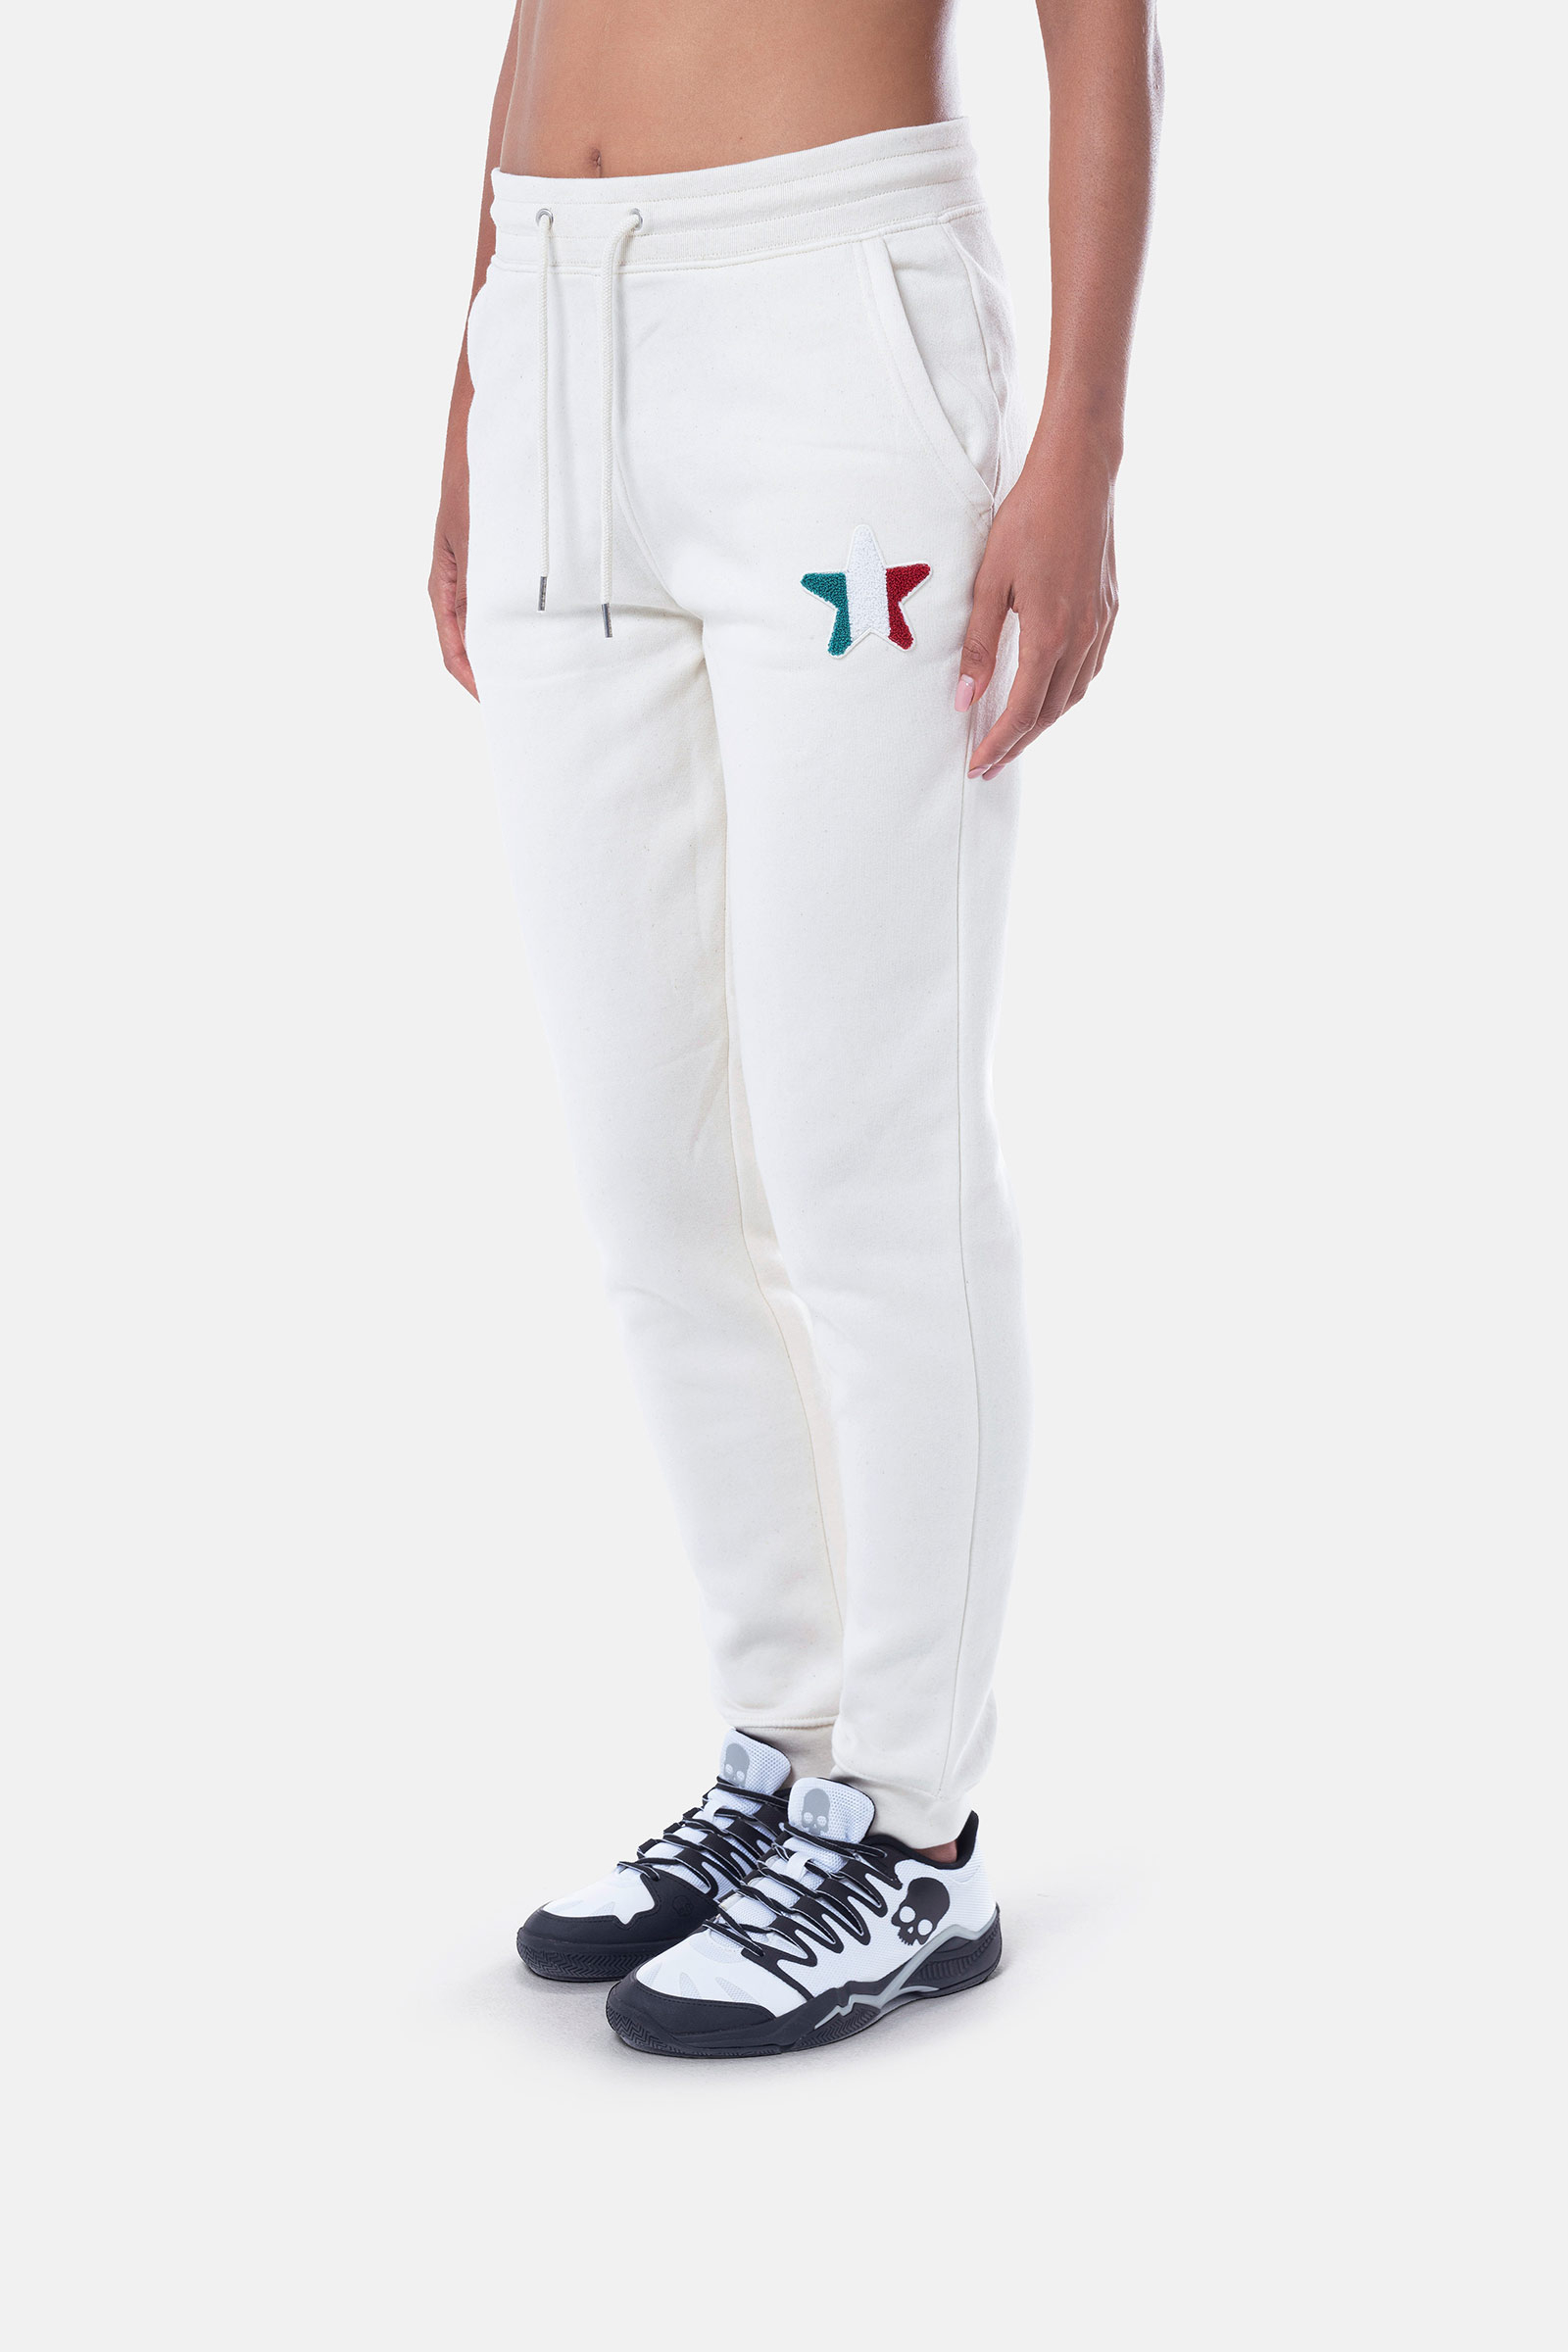 ITALIA 17 PANTS - WHITE - Hydrogen - Luxury Sportwear